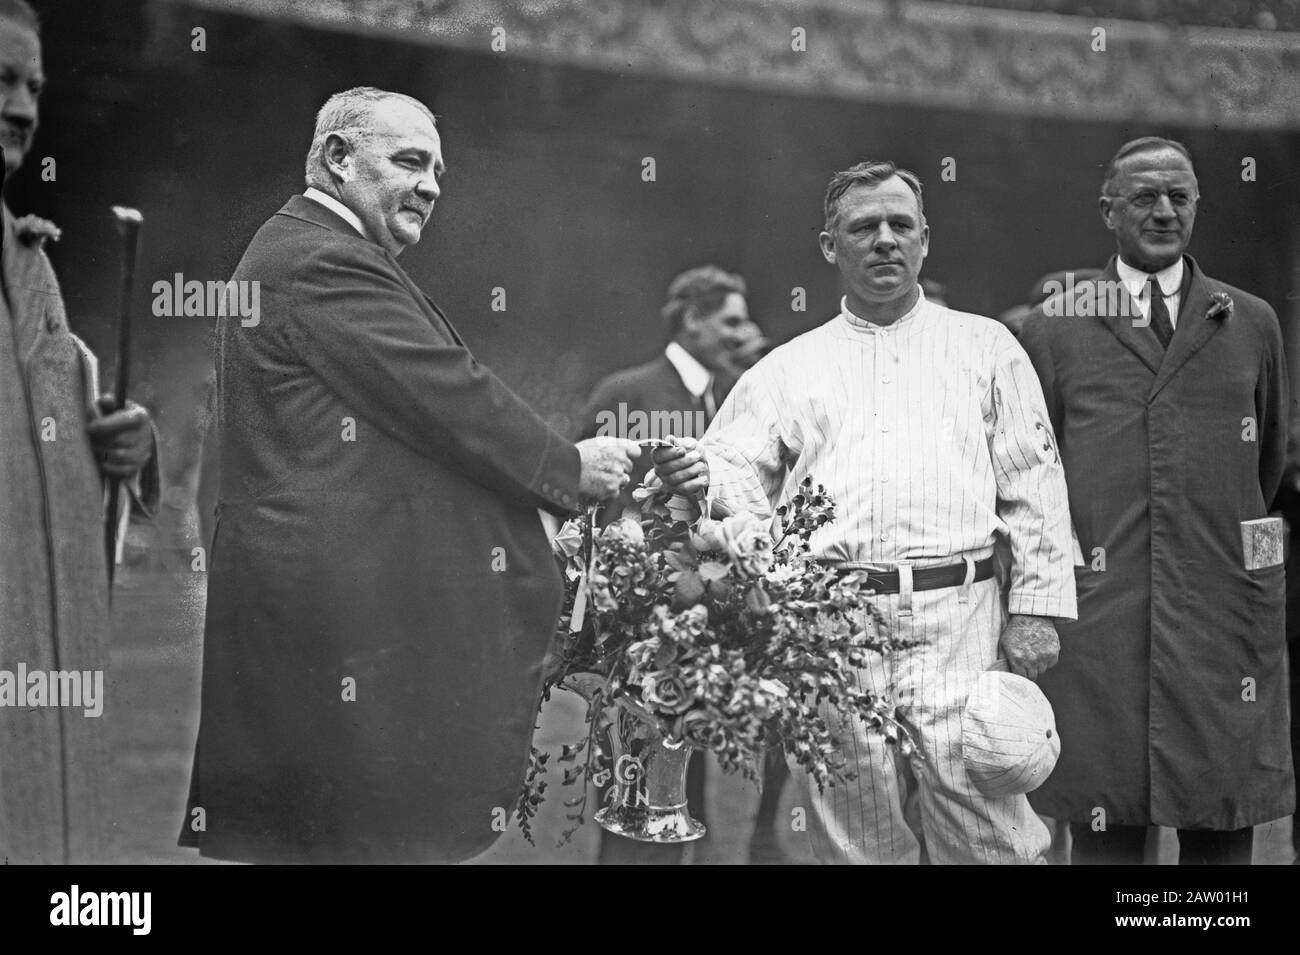 Edward McCall presenta un cesto d'argento di fiori al manager John McGraw di New York Giants al Polo Grounds, NY 1913 7 ottobre. Foto Stock